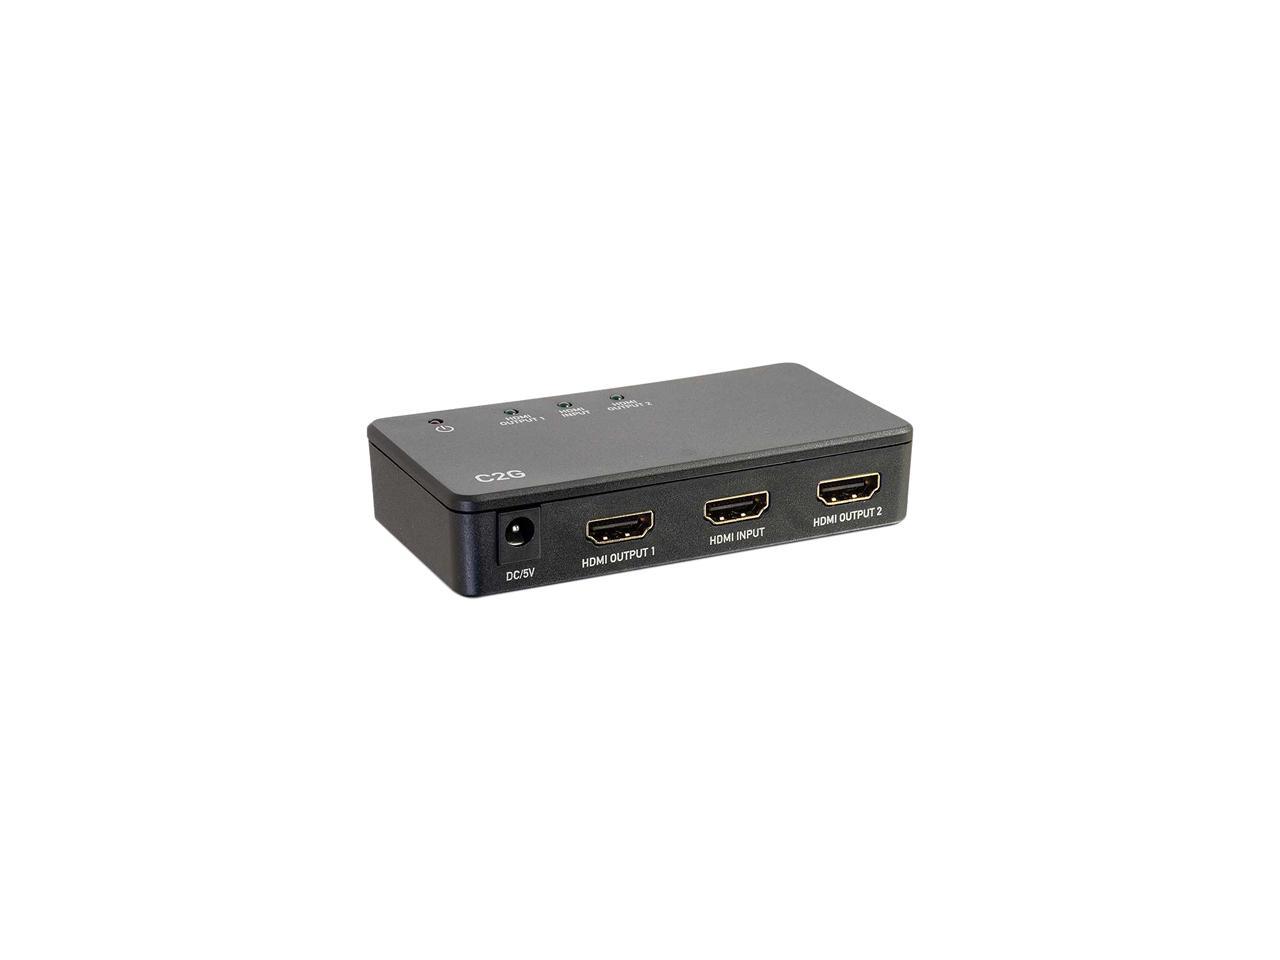 C2G 41057 2-Port 4K UHD HDMI Splitter, Black